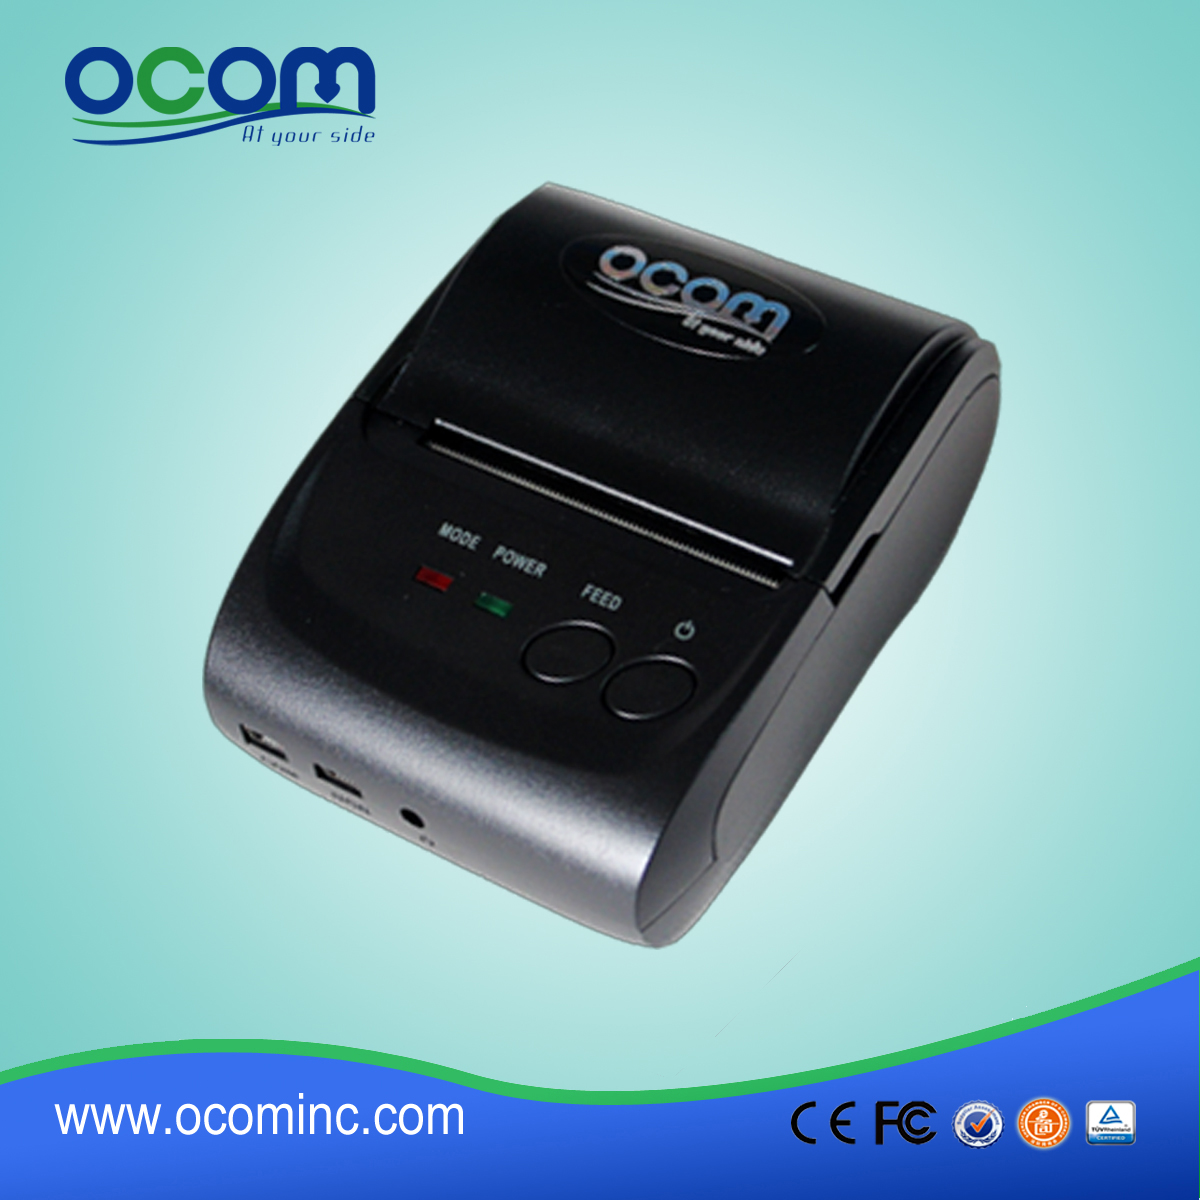 58mm迷你便携式蓝牙热敏打印机（OCPP-M05）